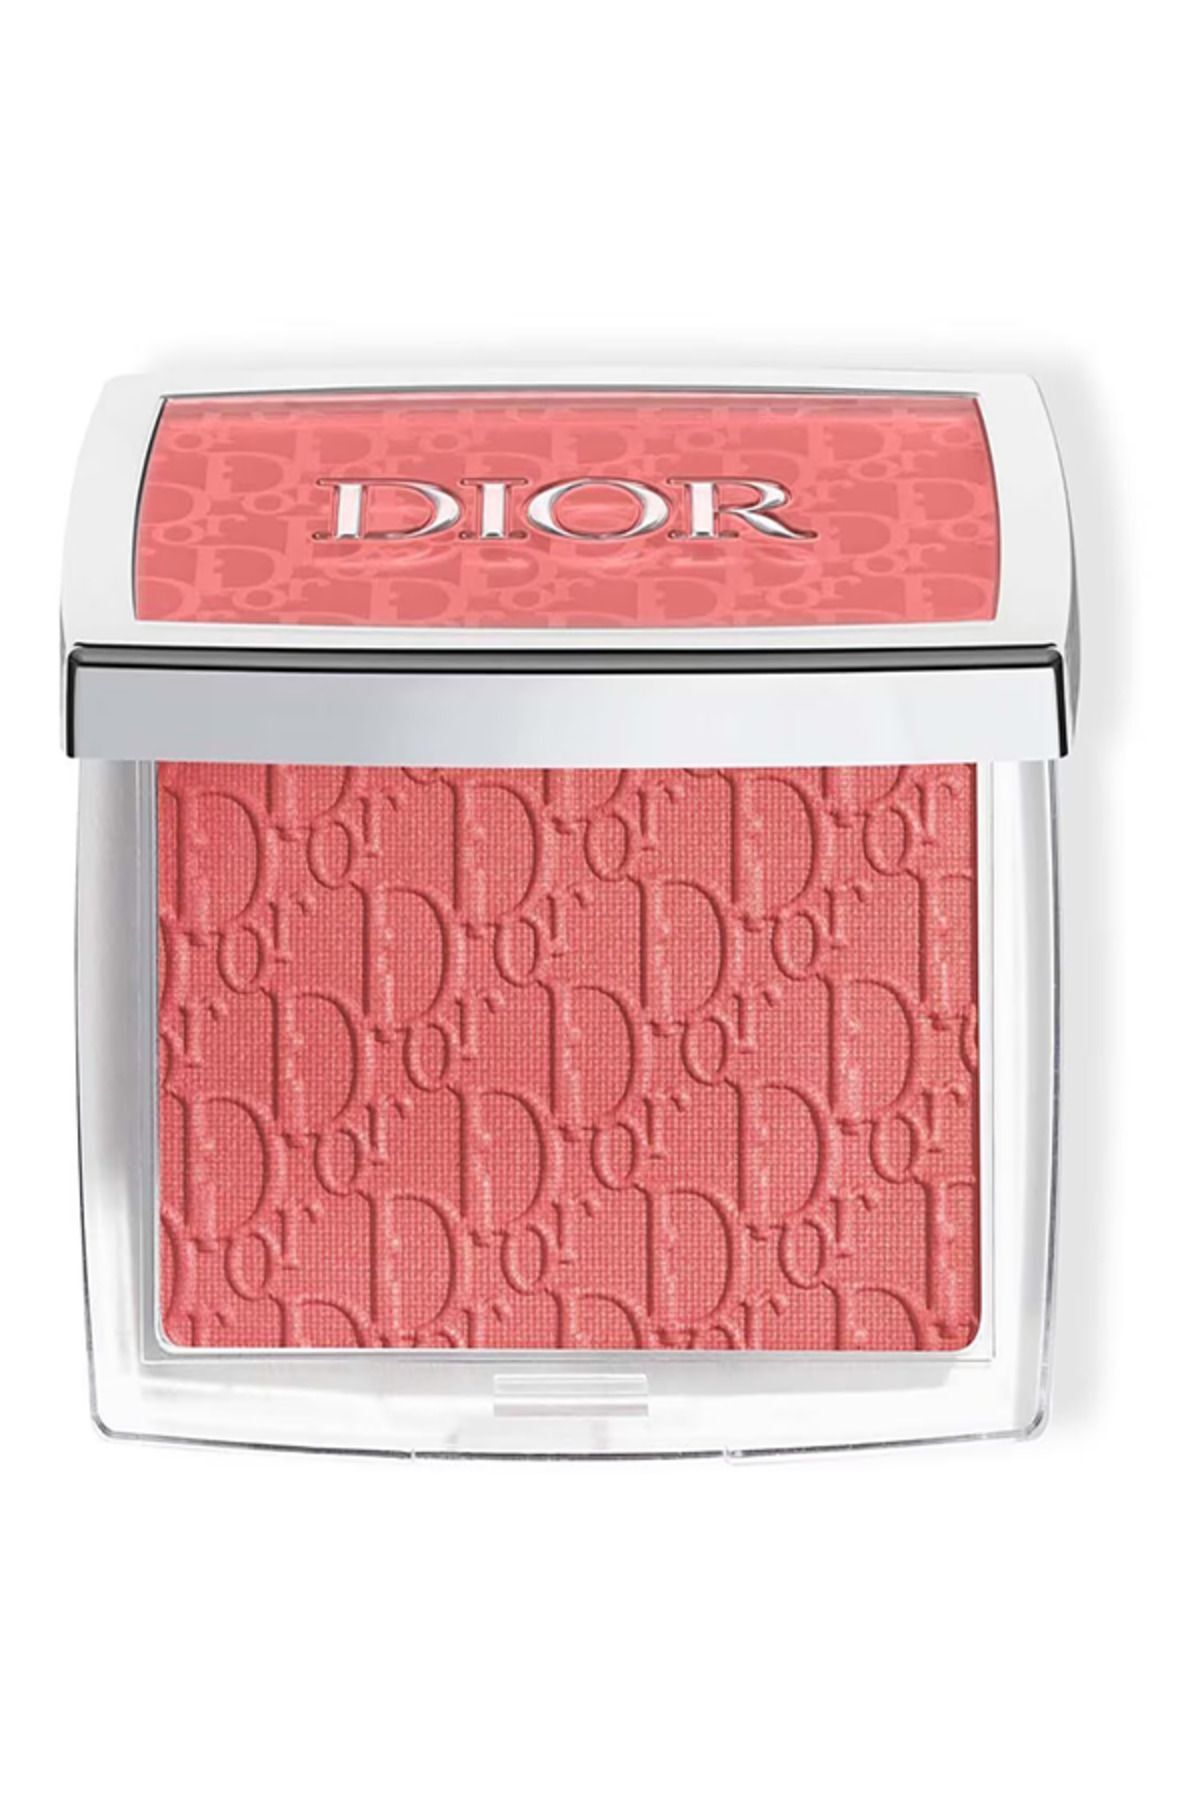 Dior BACKSTAGE Rosy Glow - Allık